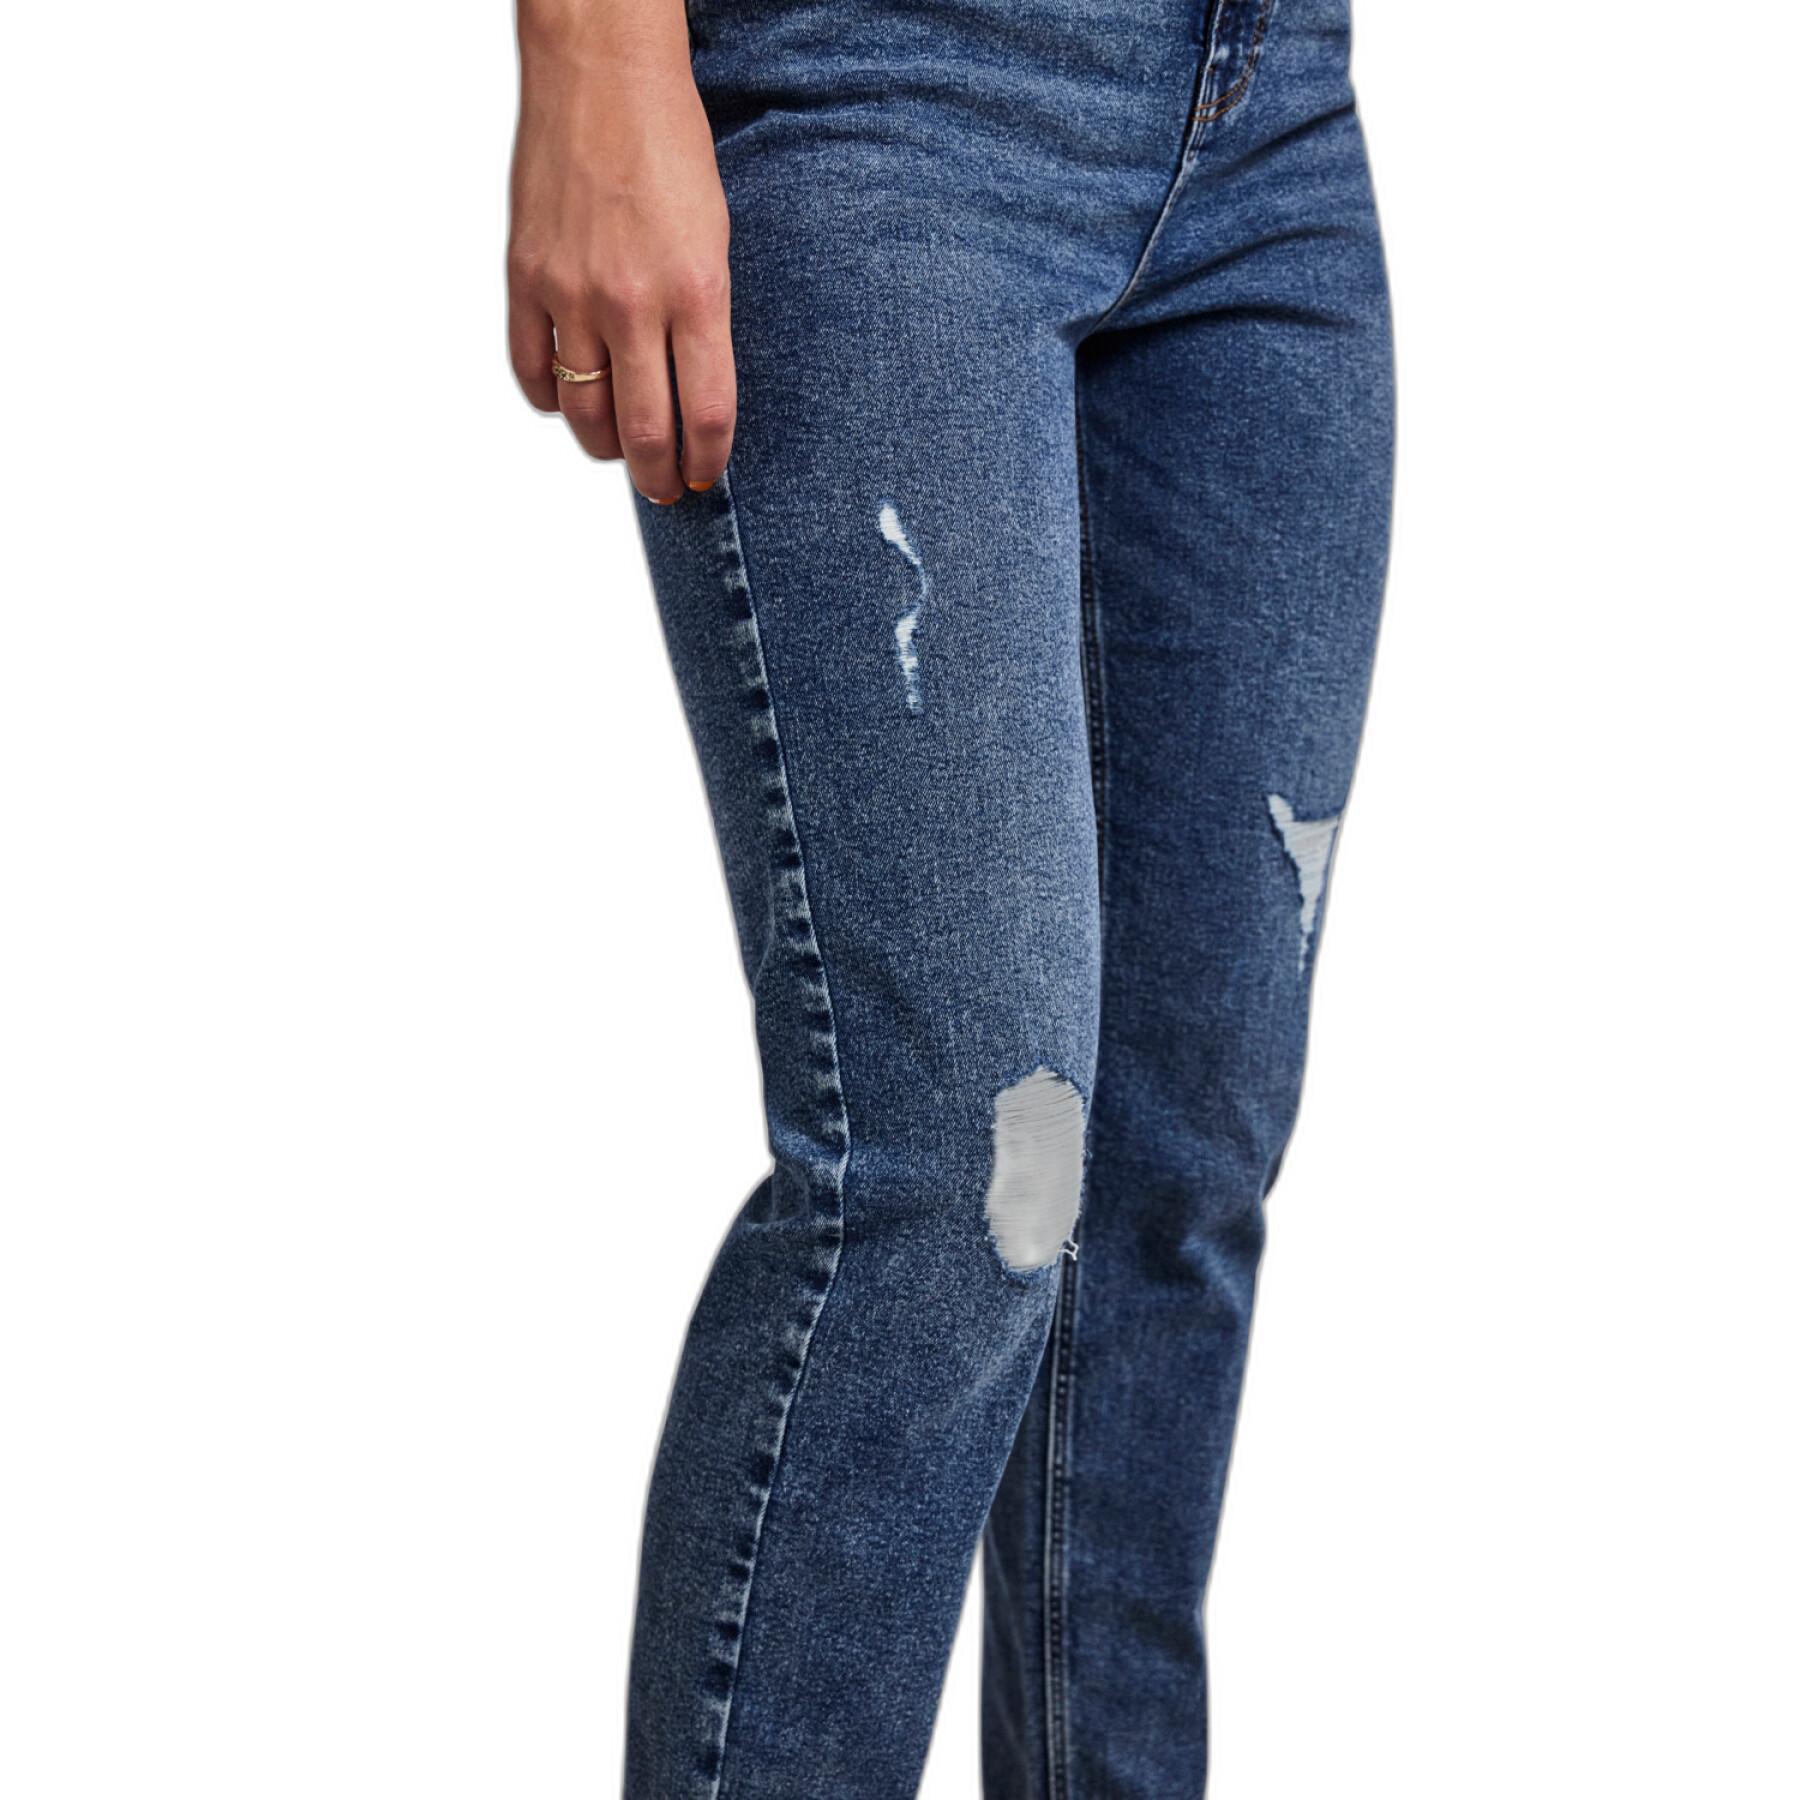 Women's destroy jeans Pieces Kesia